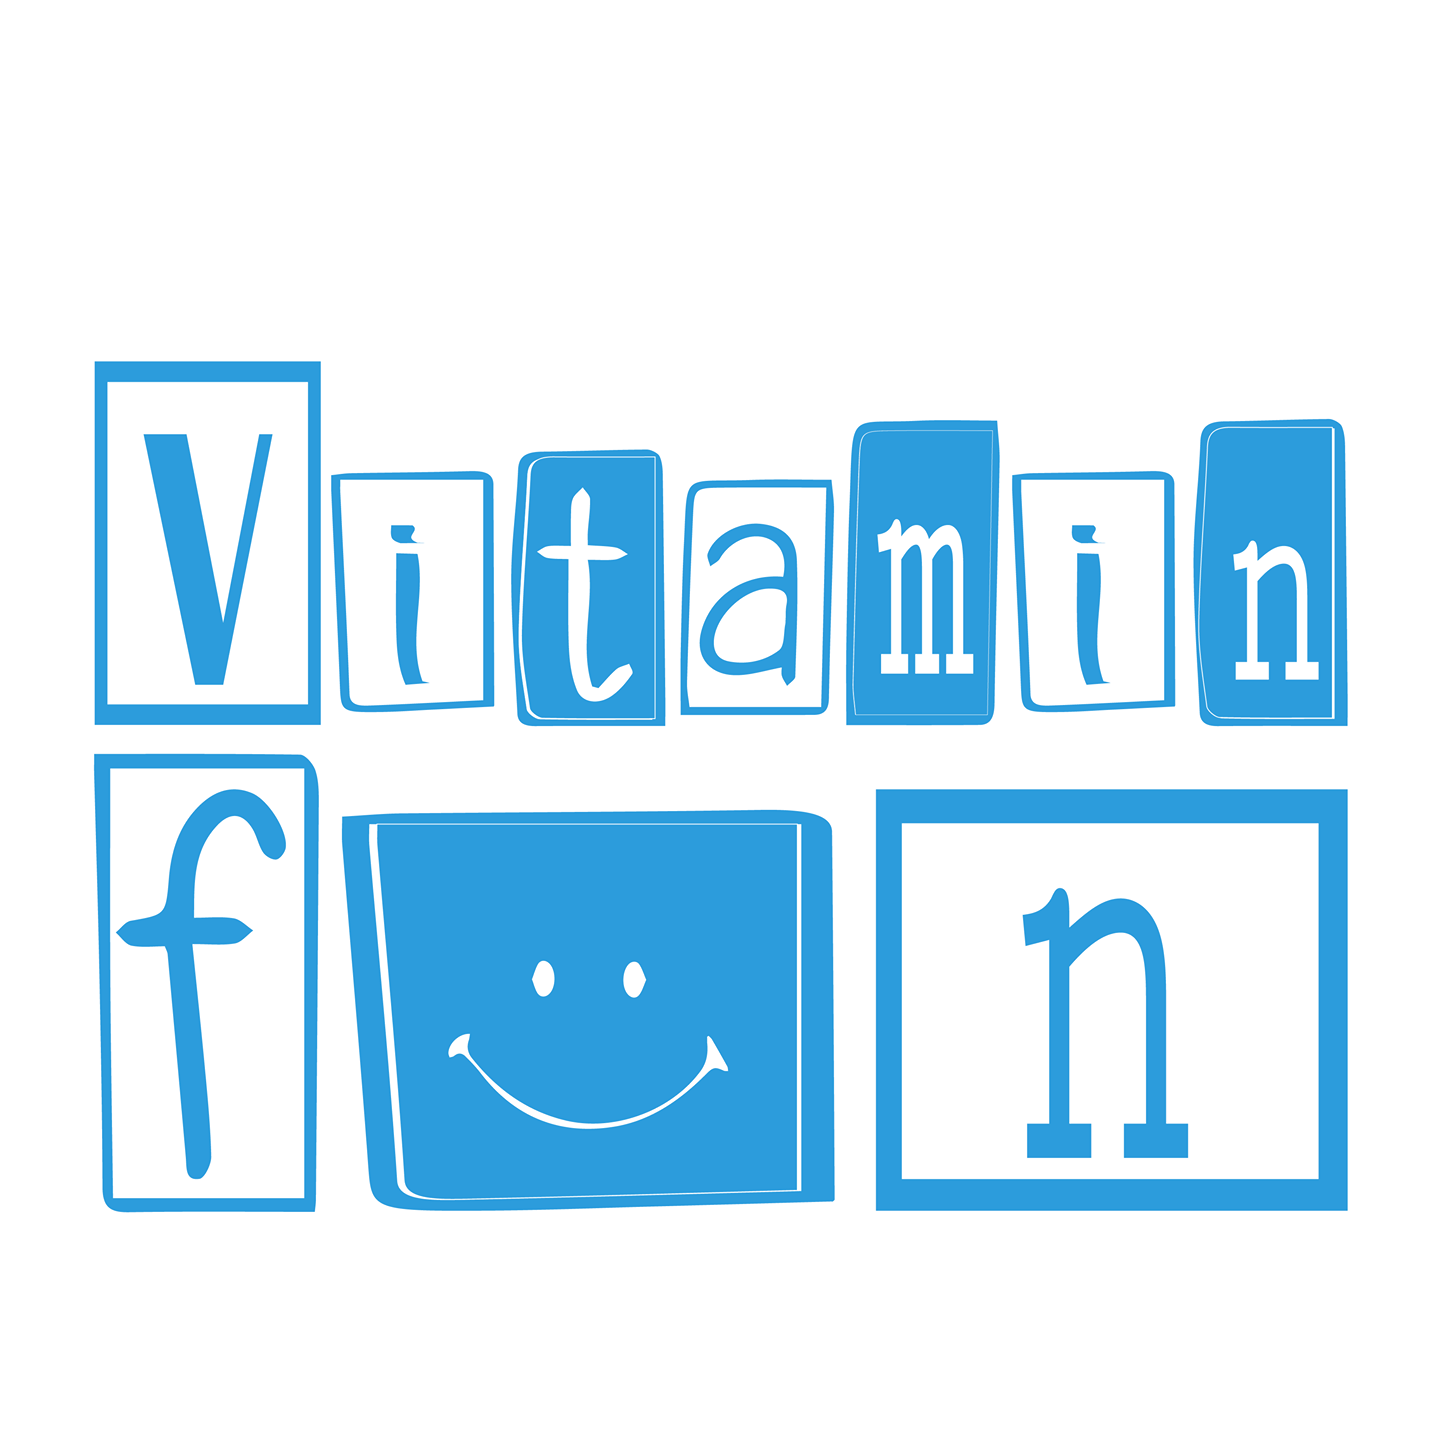 Vitamin Fun